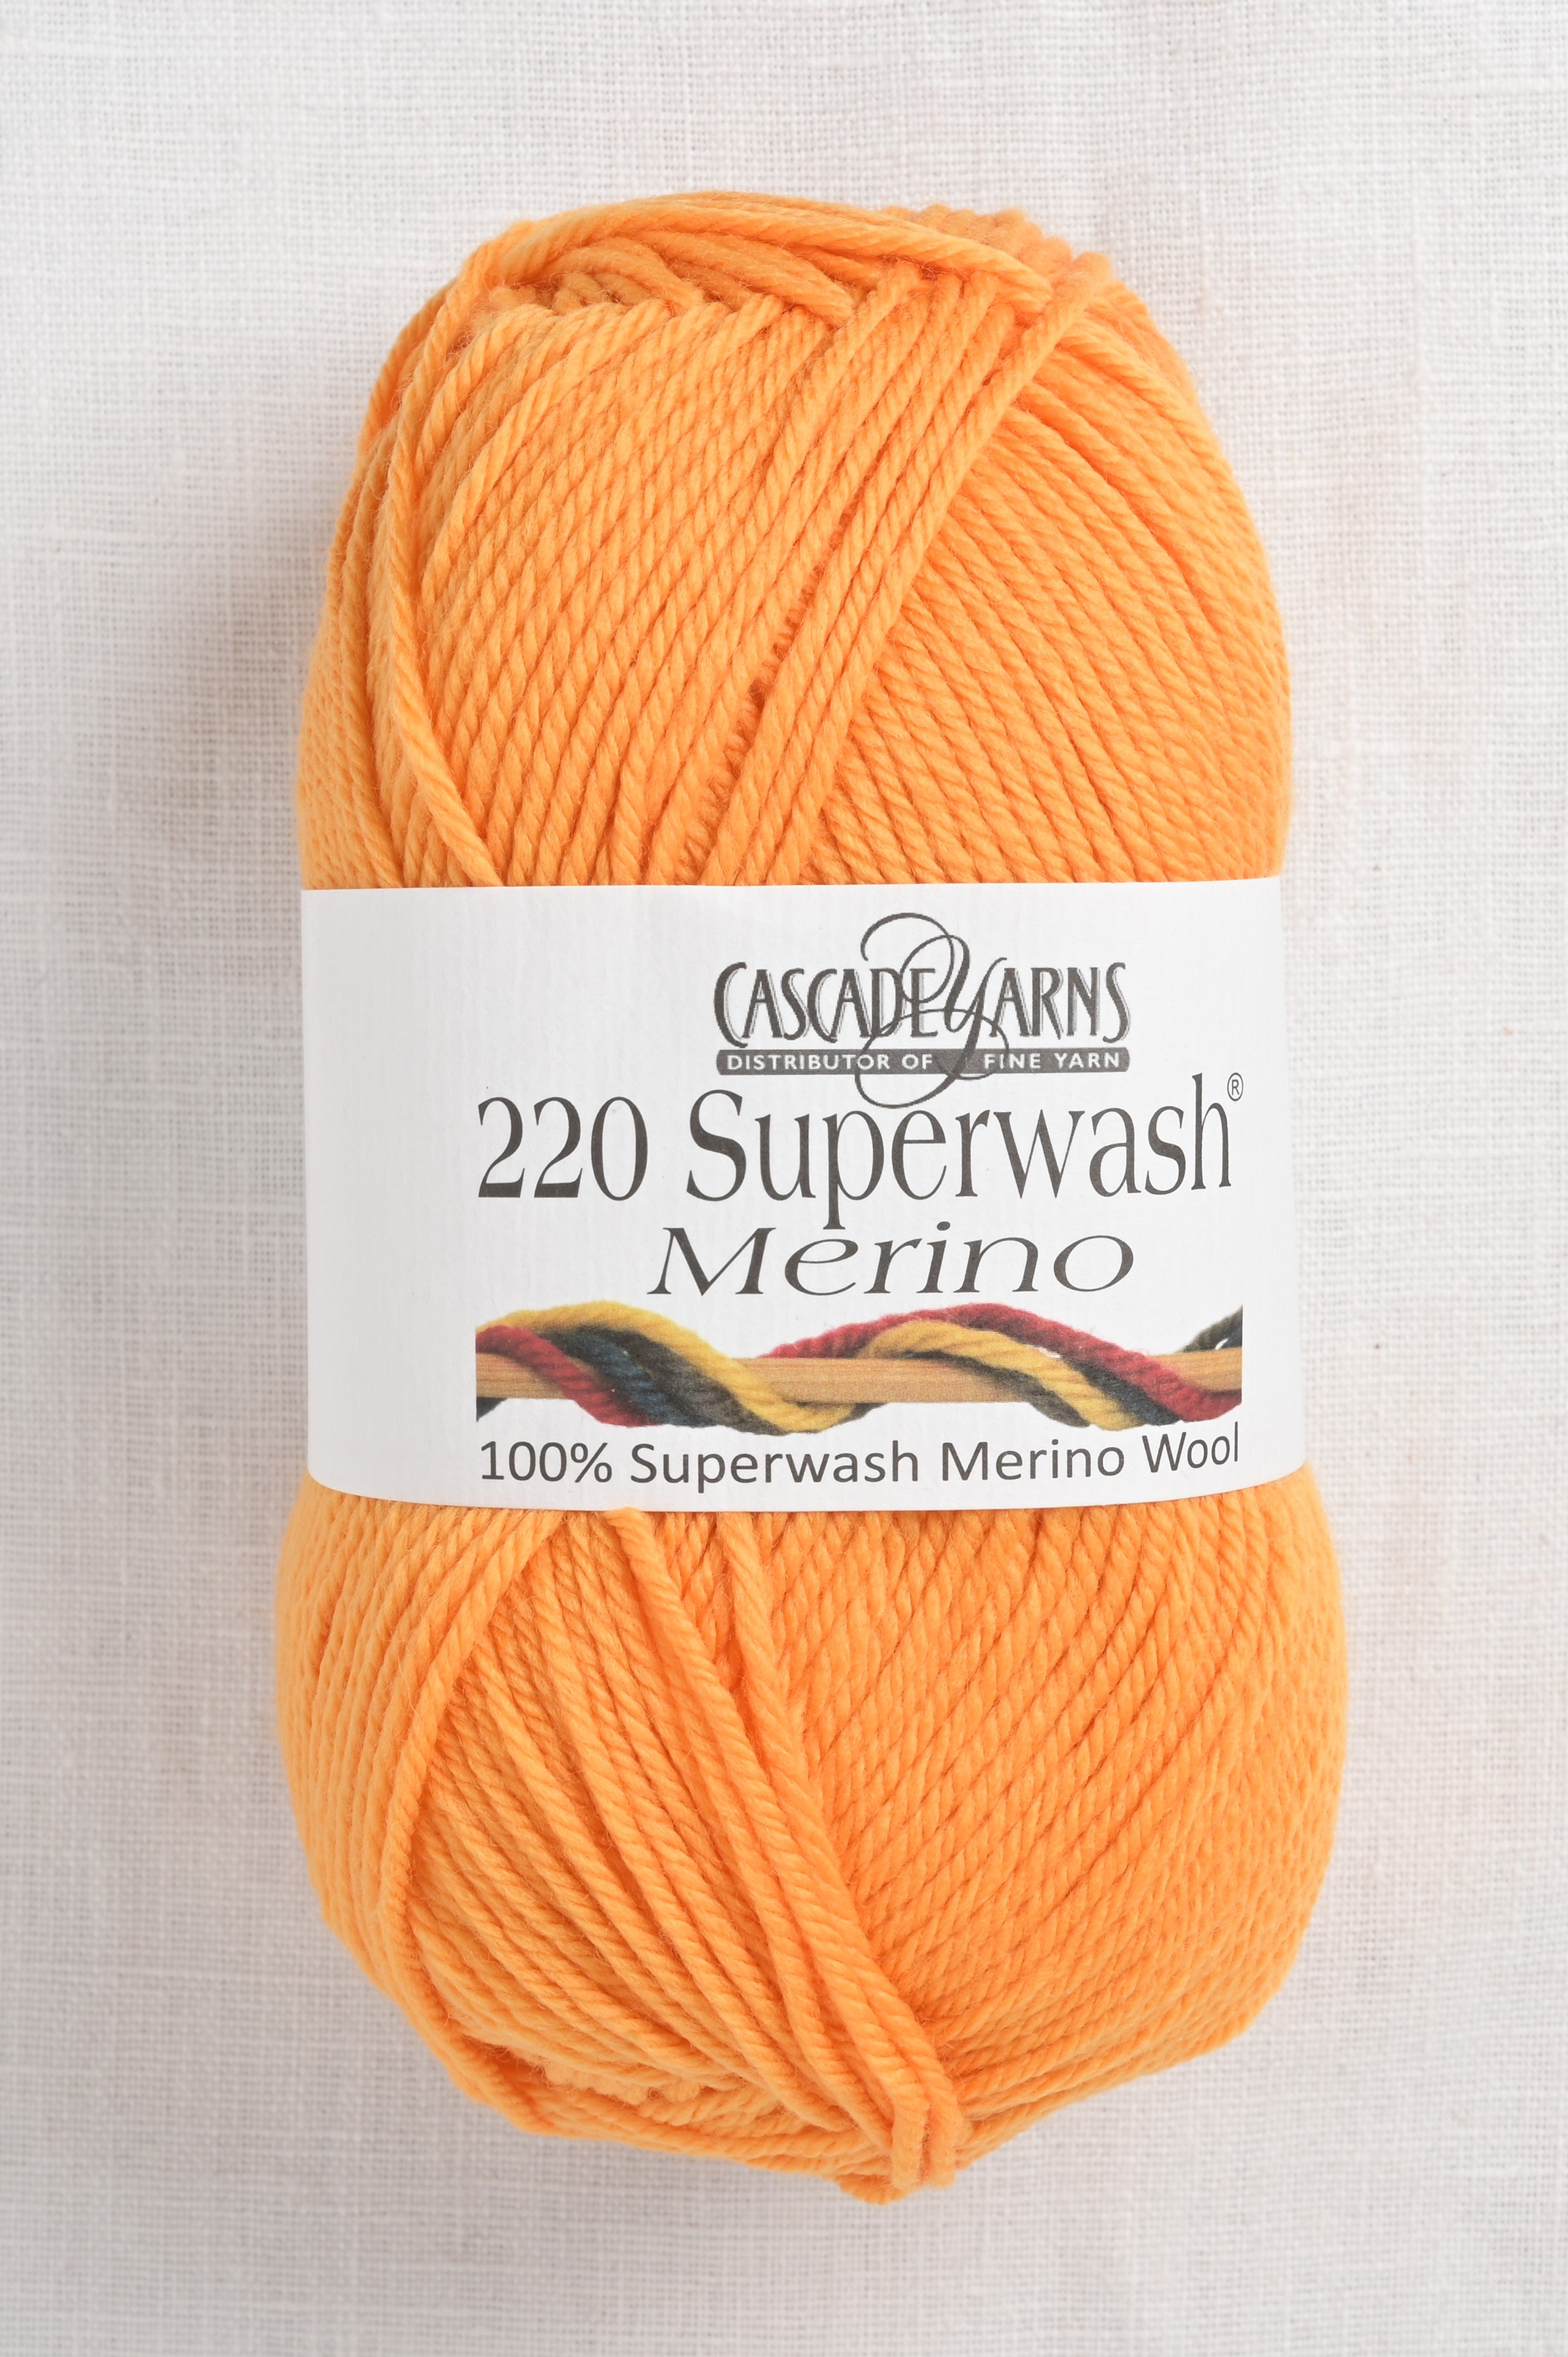 Bright Yellow - Worsted Weight - 100% Superwash Merino Wool Yarn